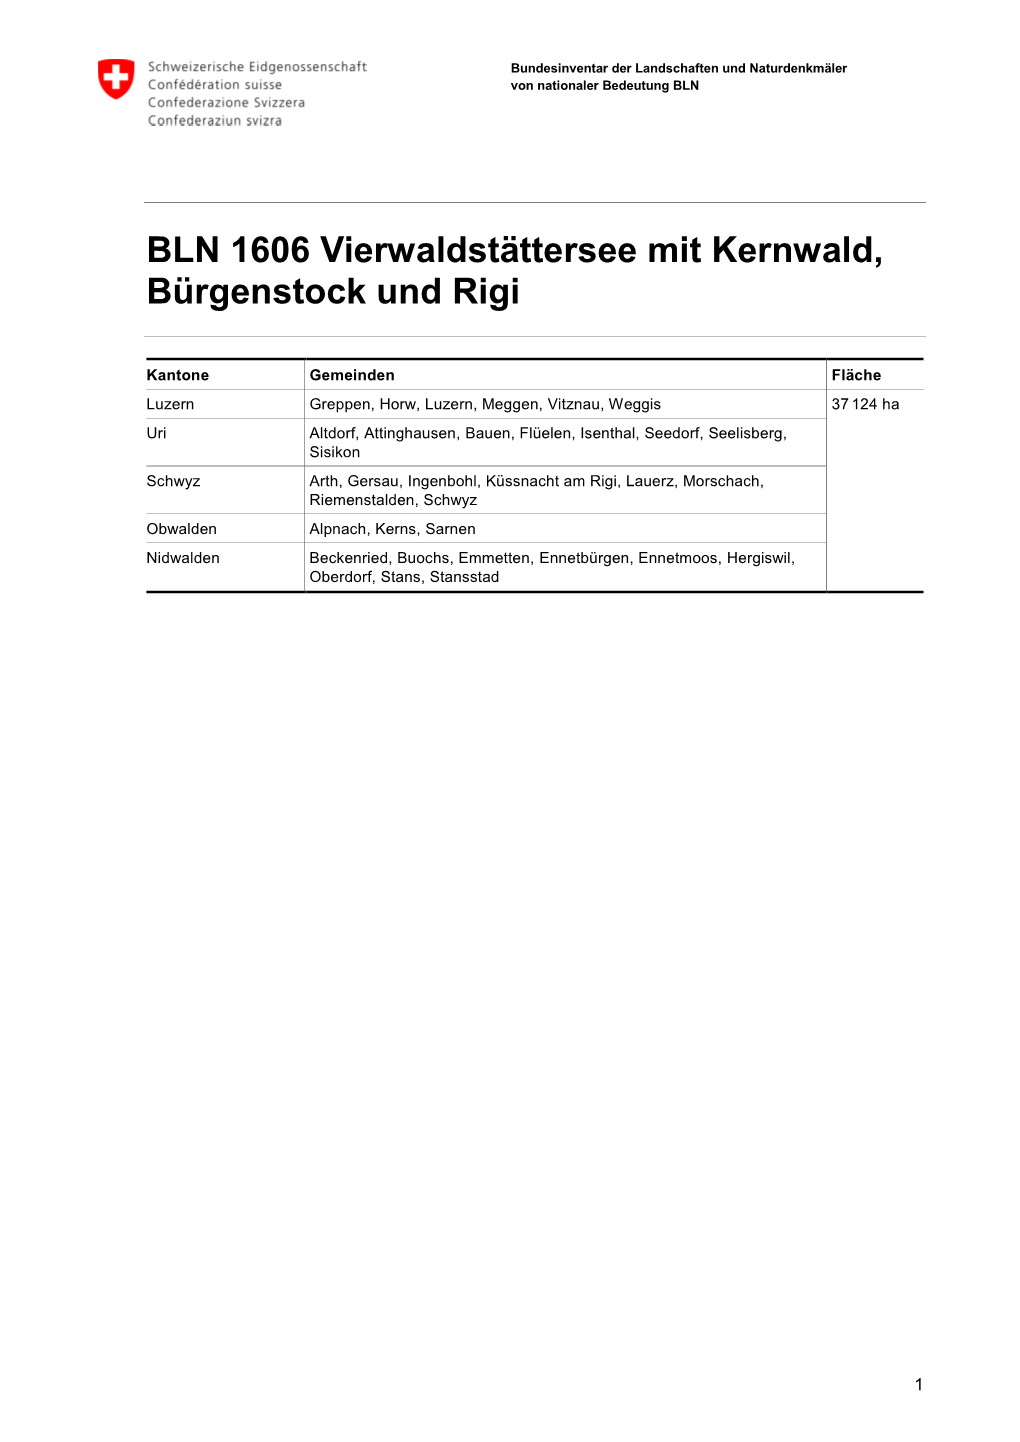 BLN 1606 Vierwaldstättersee Mit Kernwald, Bürgenstock Und Rigi